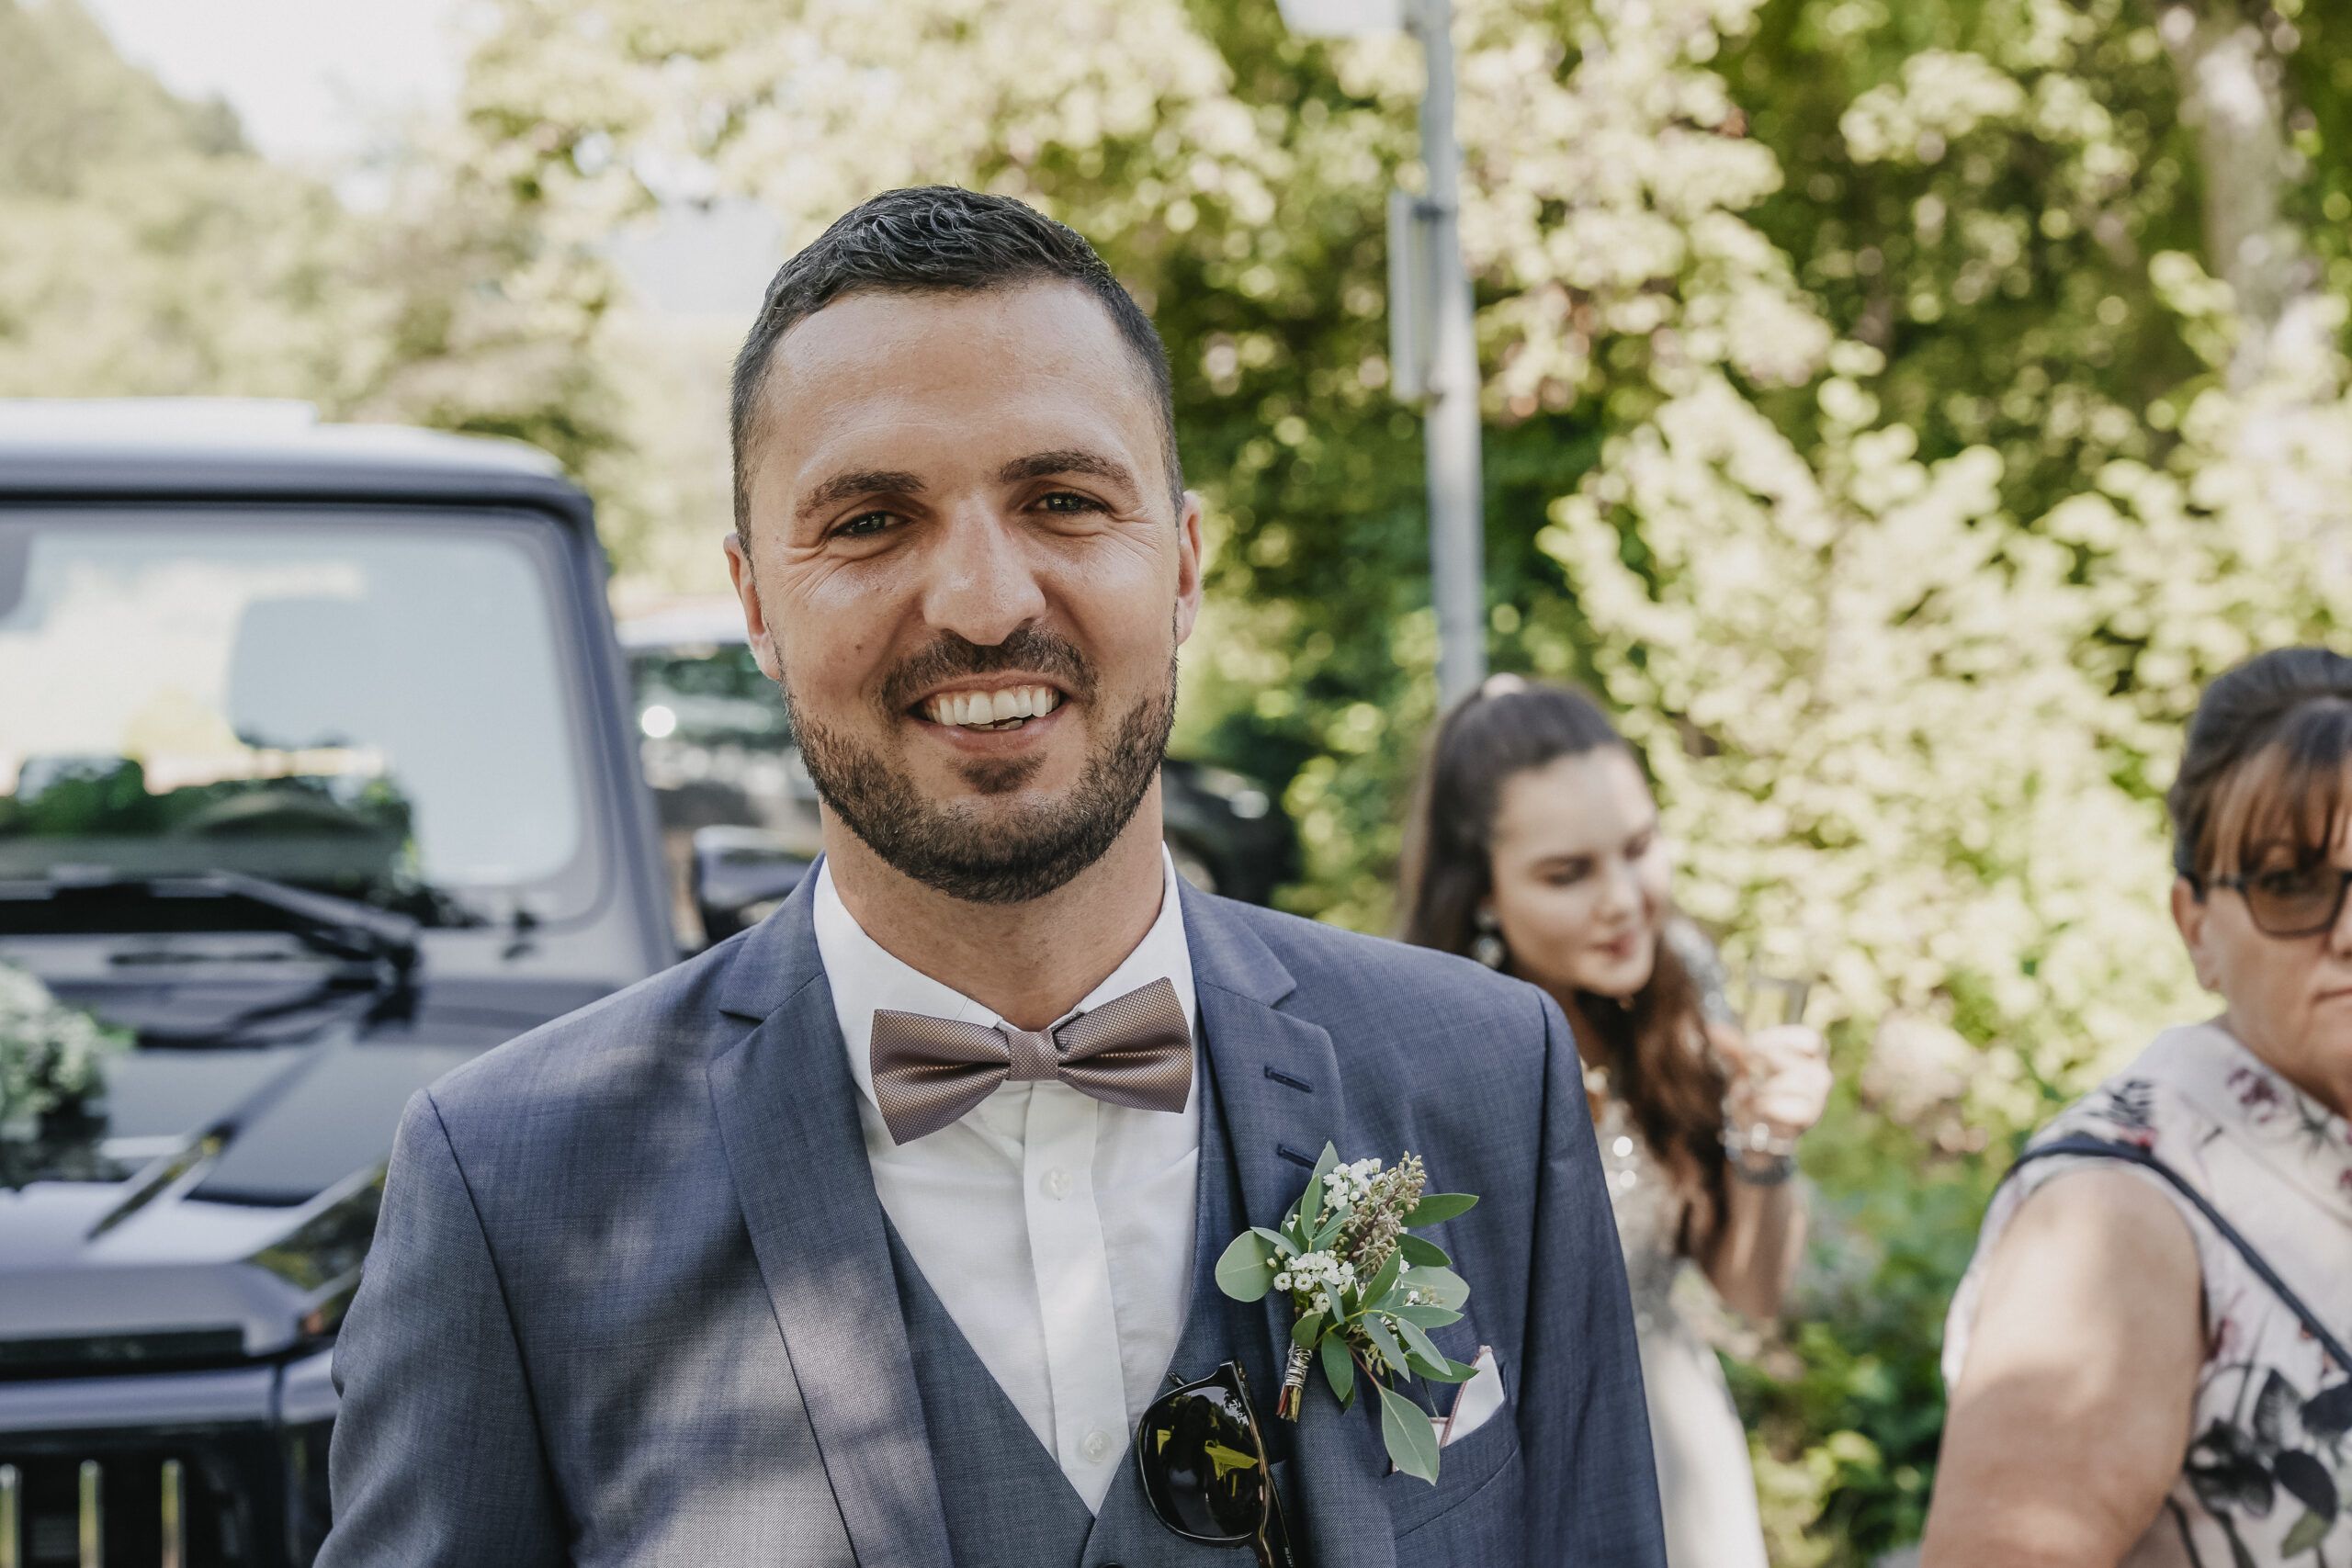 Der Bräutigam schaut glücklich in die Kamera. Portraitaufnahme während dem Sektempfang nach der Standesamtlichen Trauung.